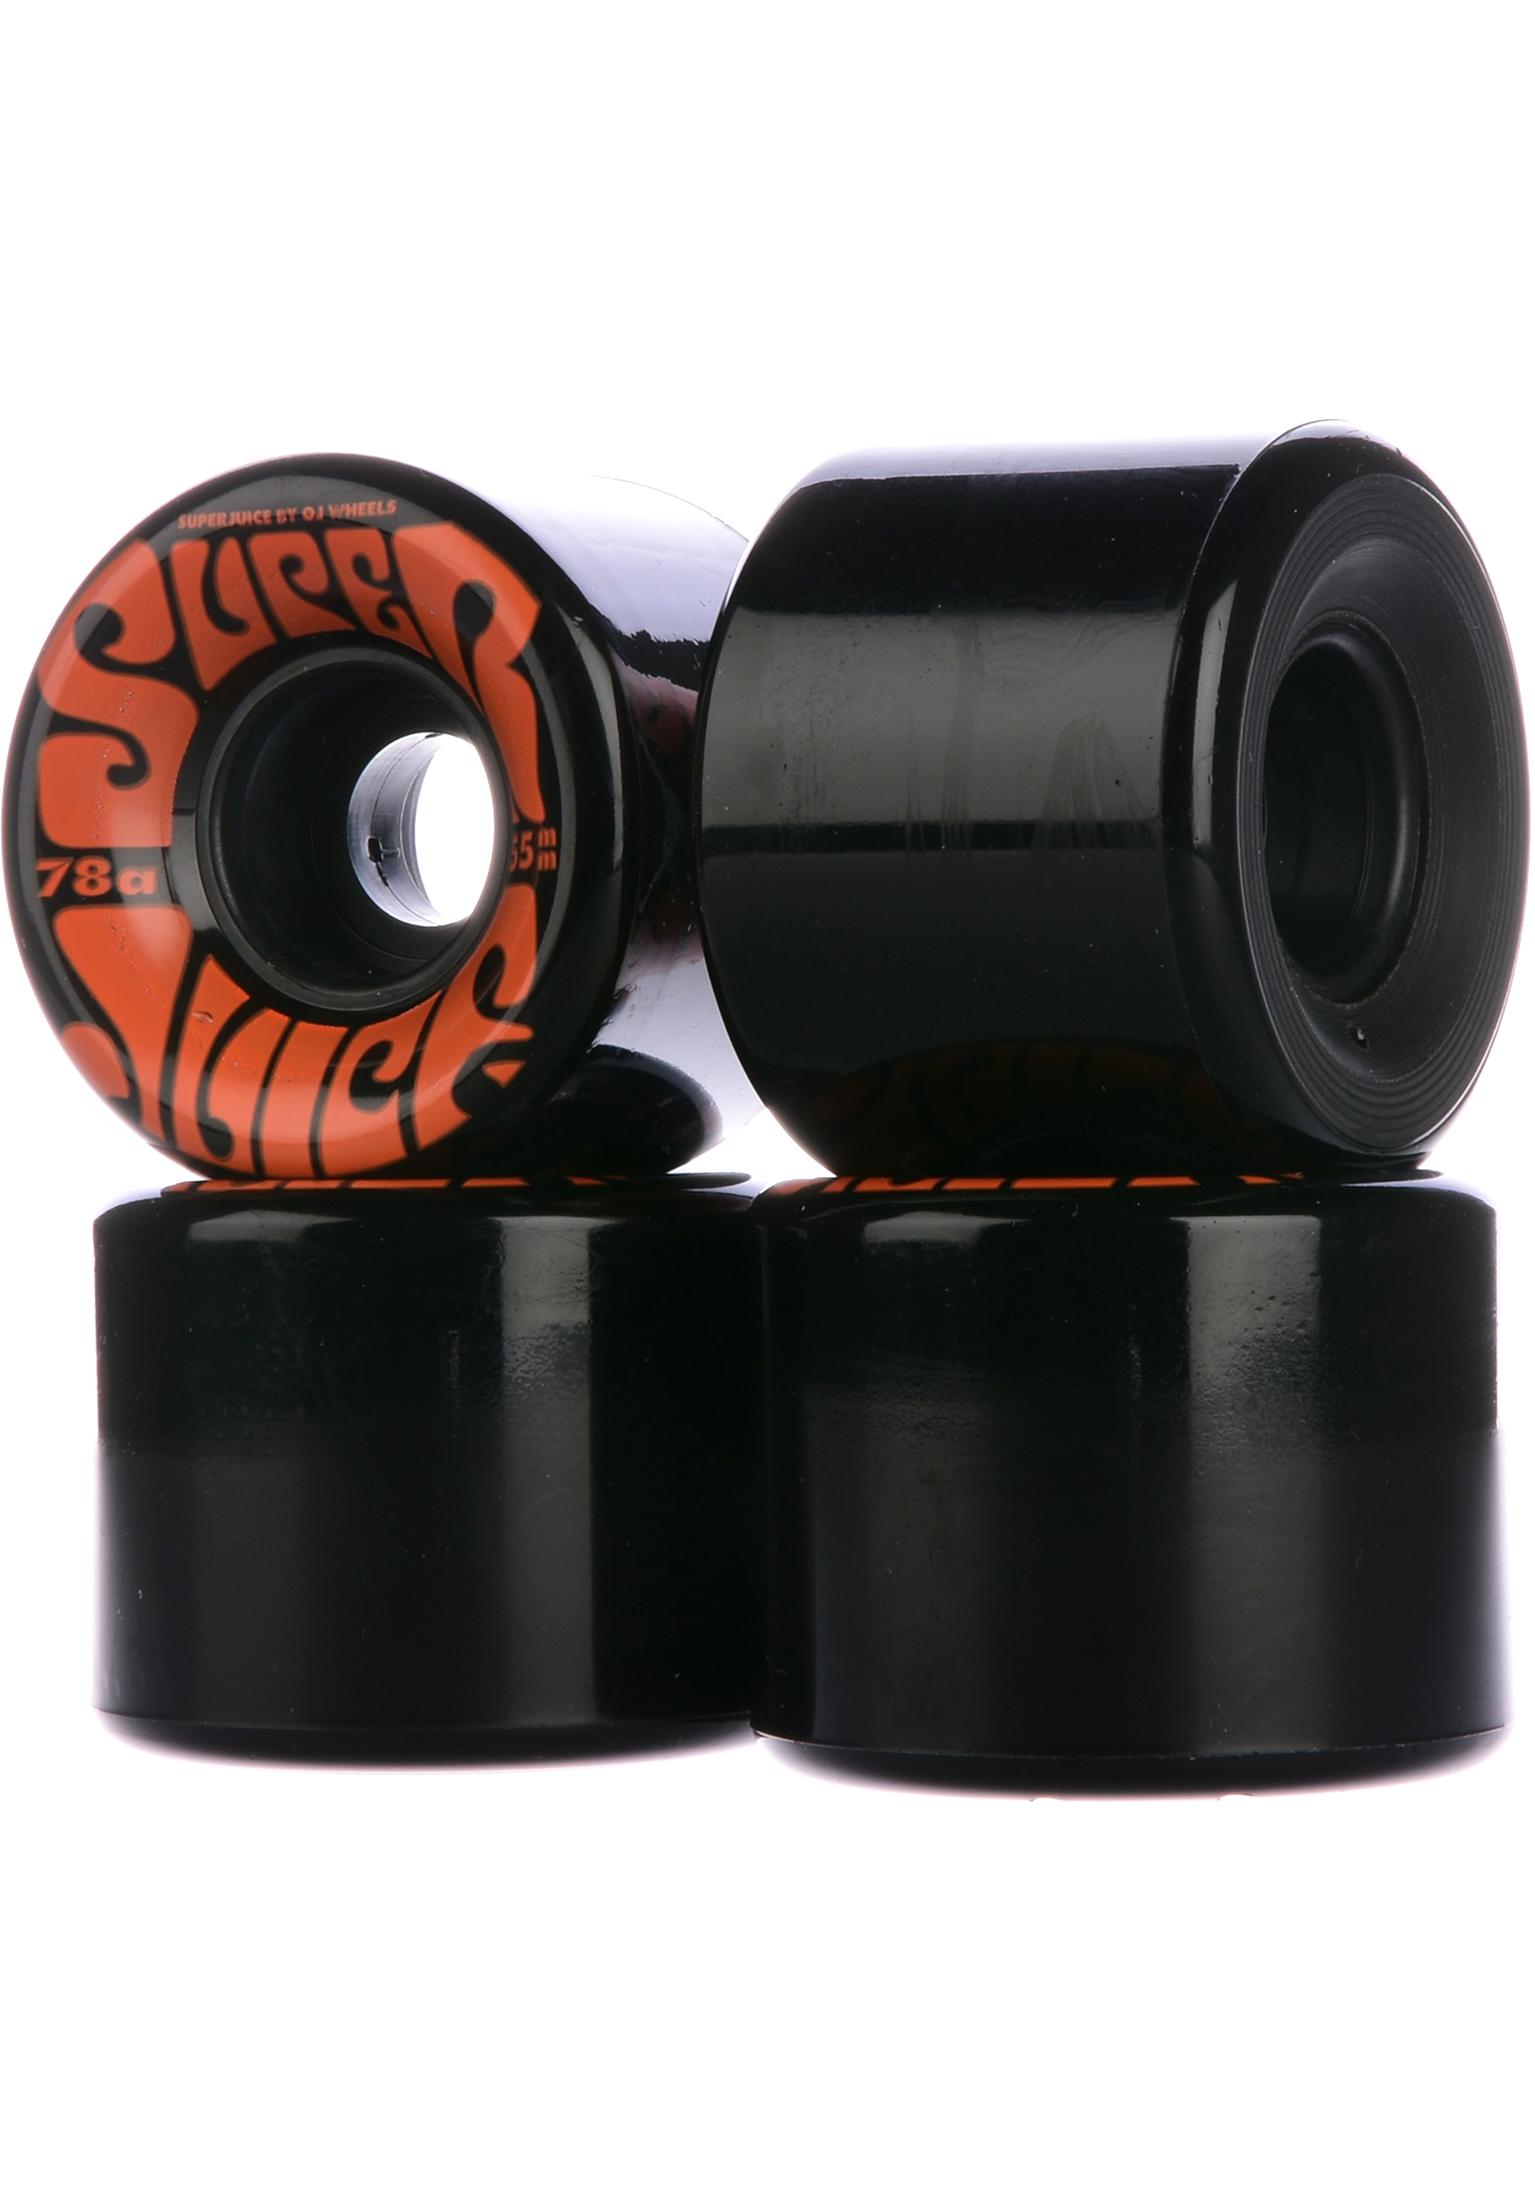 OJ Wheels 55mm Mini Super Juice 78a skateboardwielen black